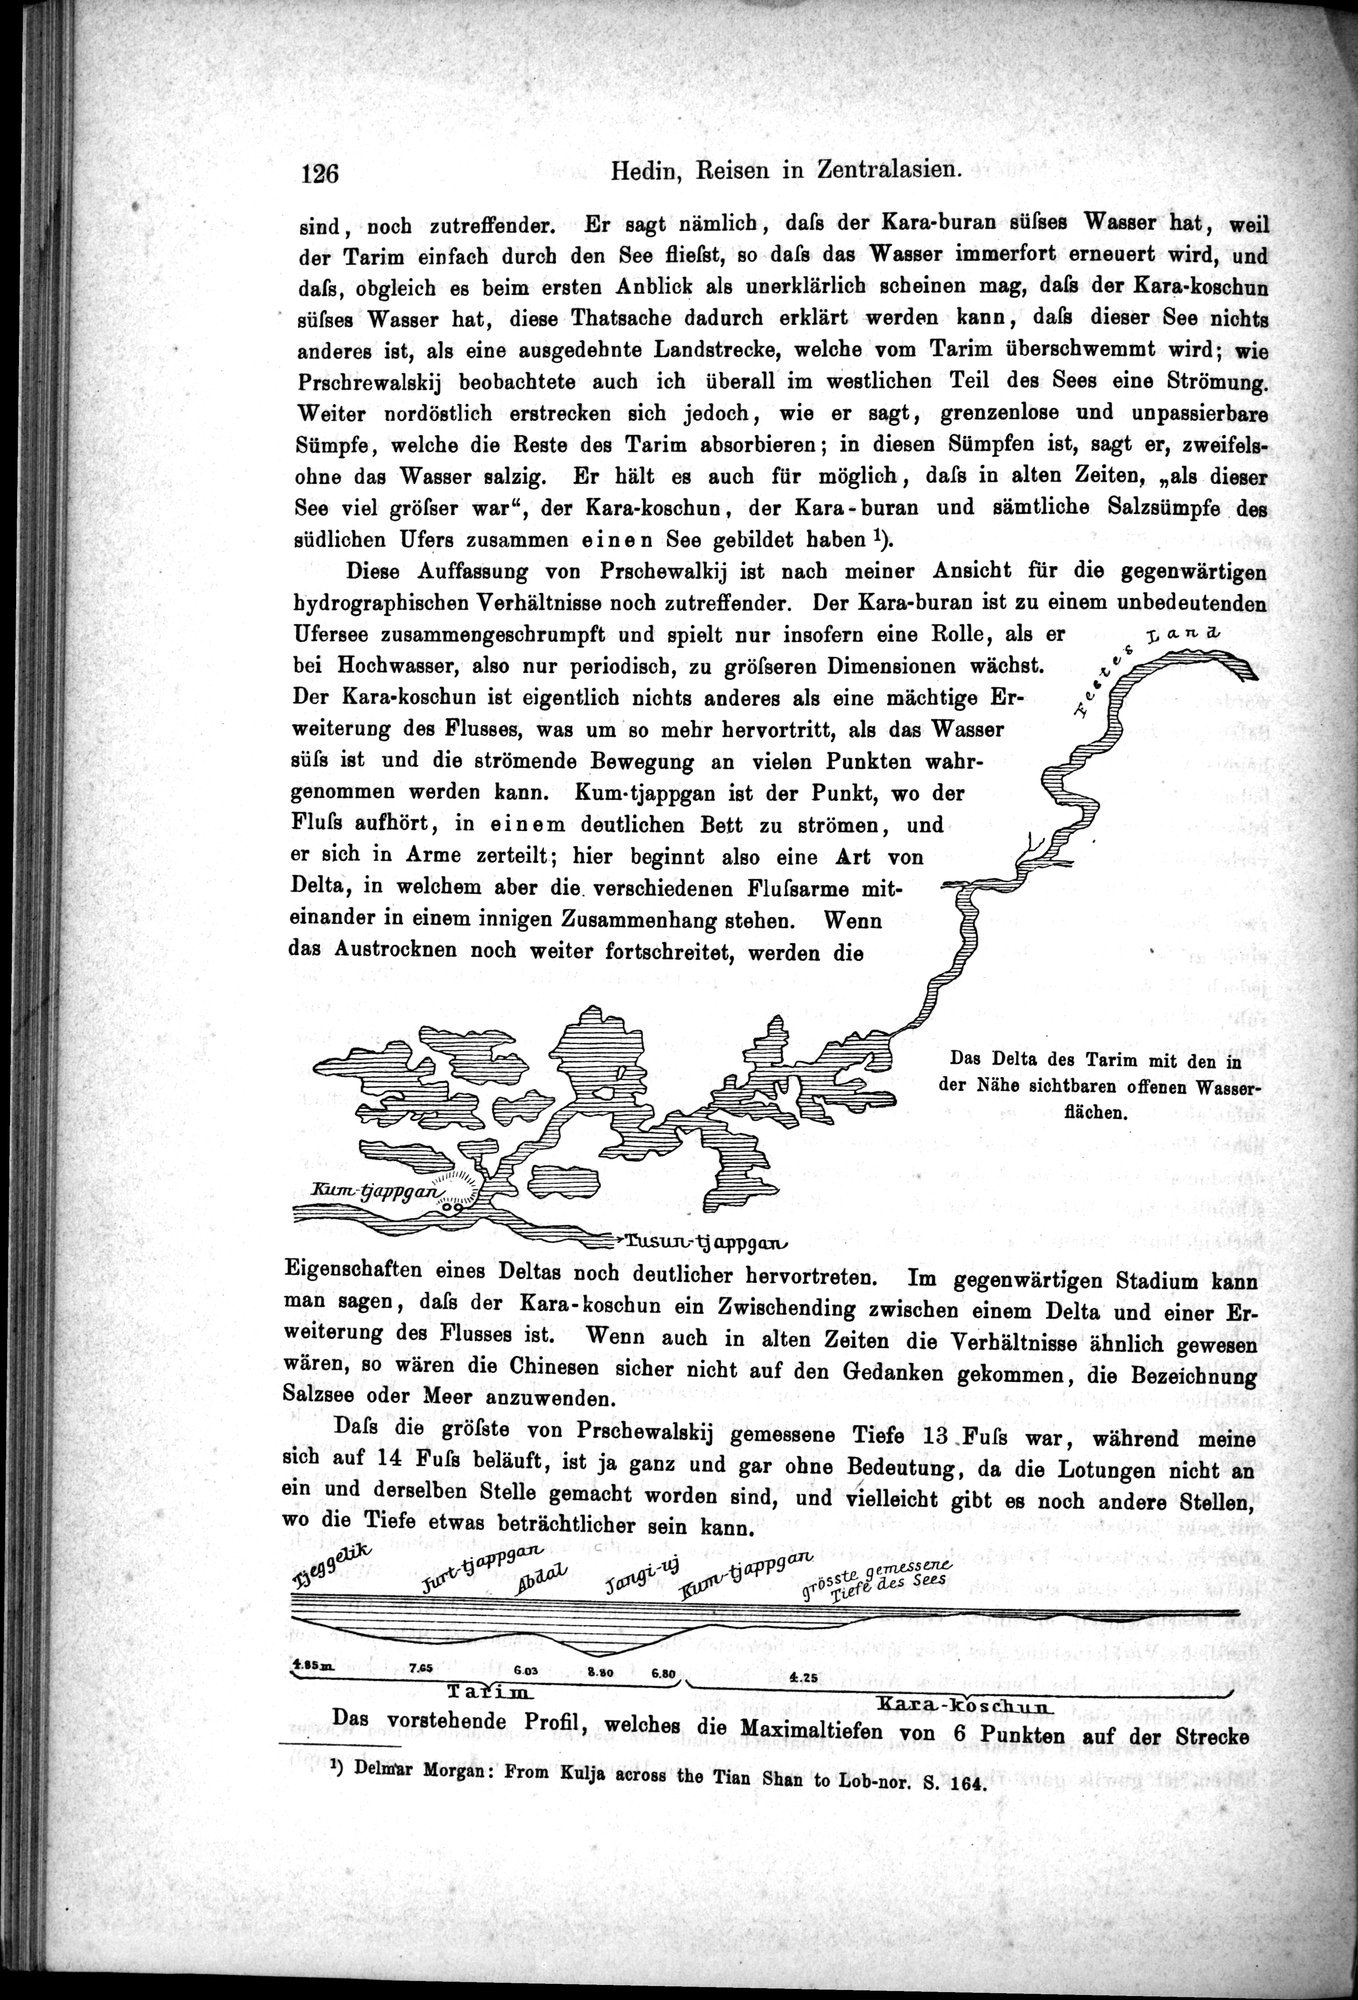 Die Geographische-Wissenschaftlichen Ergebnisse meiner Reisen in Zentralasien, 1894-1897 : vol.1 / Page 138 (Grayscale High Resolution Image)